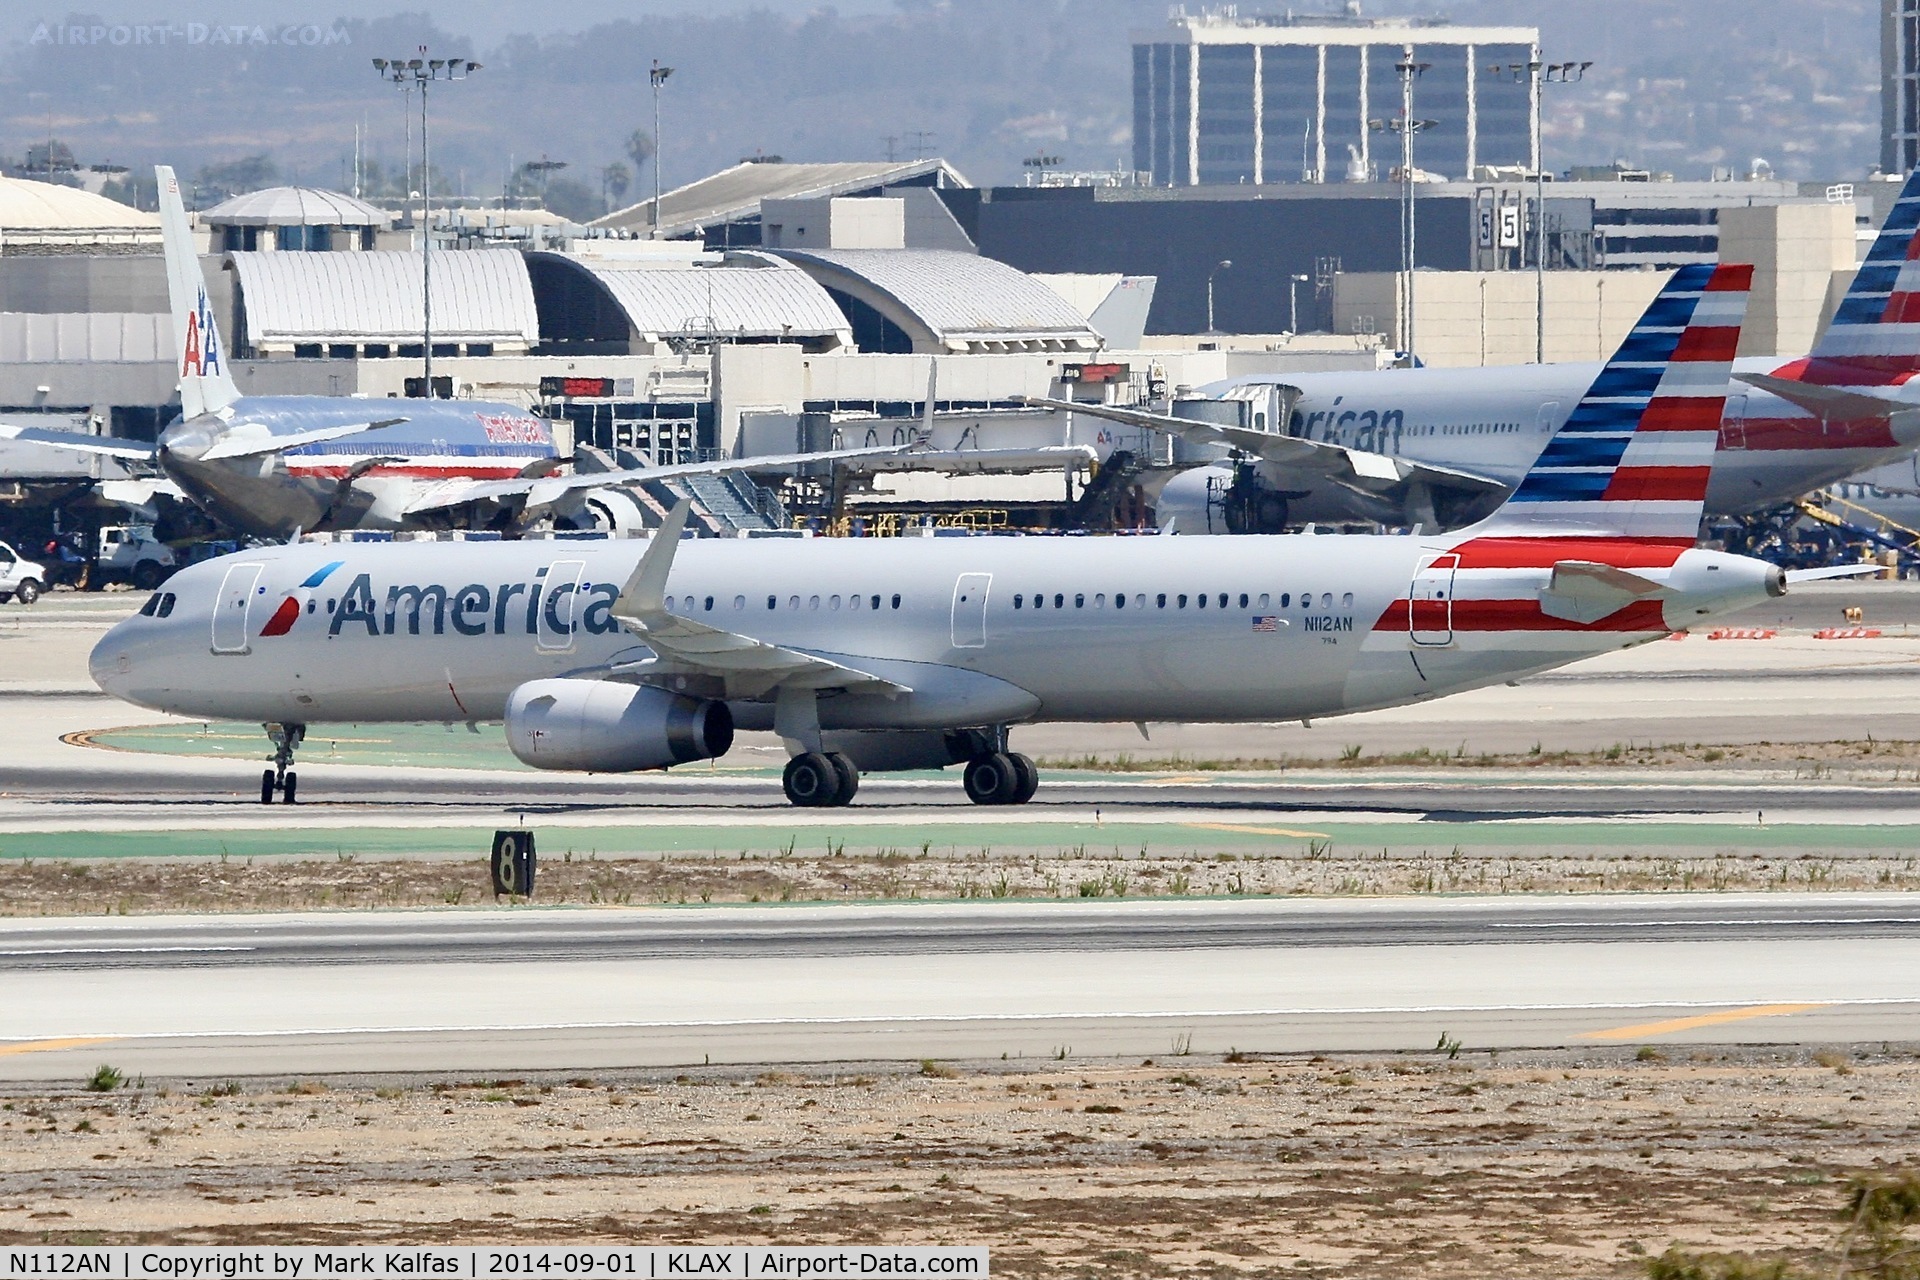 N112AN, 2014 Airbus A321-231 C/N 5991, American Airbus A321-231, N112AN arriving at LAX